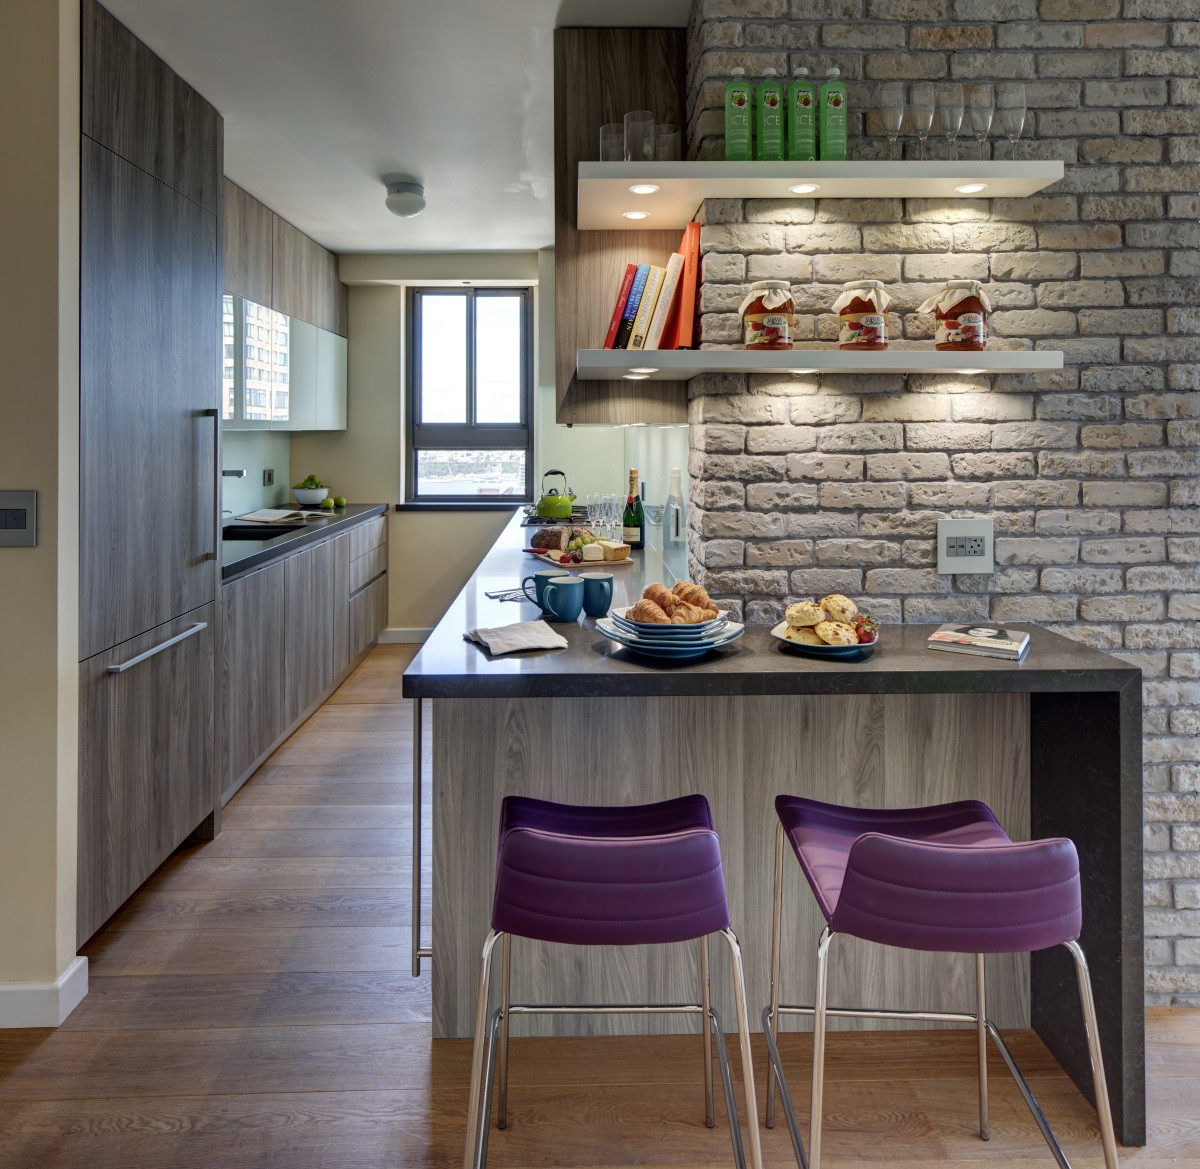 Kitchen Design Trends 2019
 2019 KITCHEN DESIGN TRENDS Modiani Kitchens